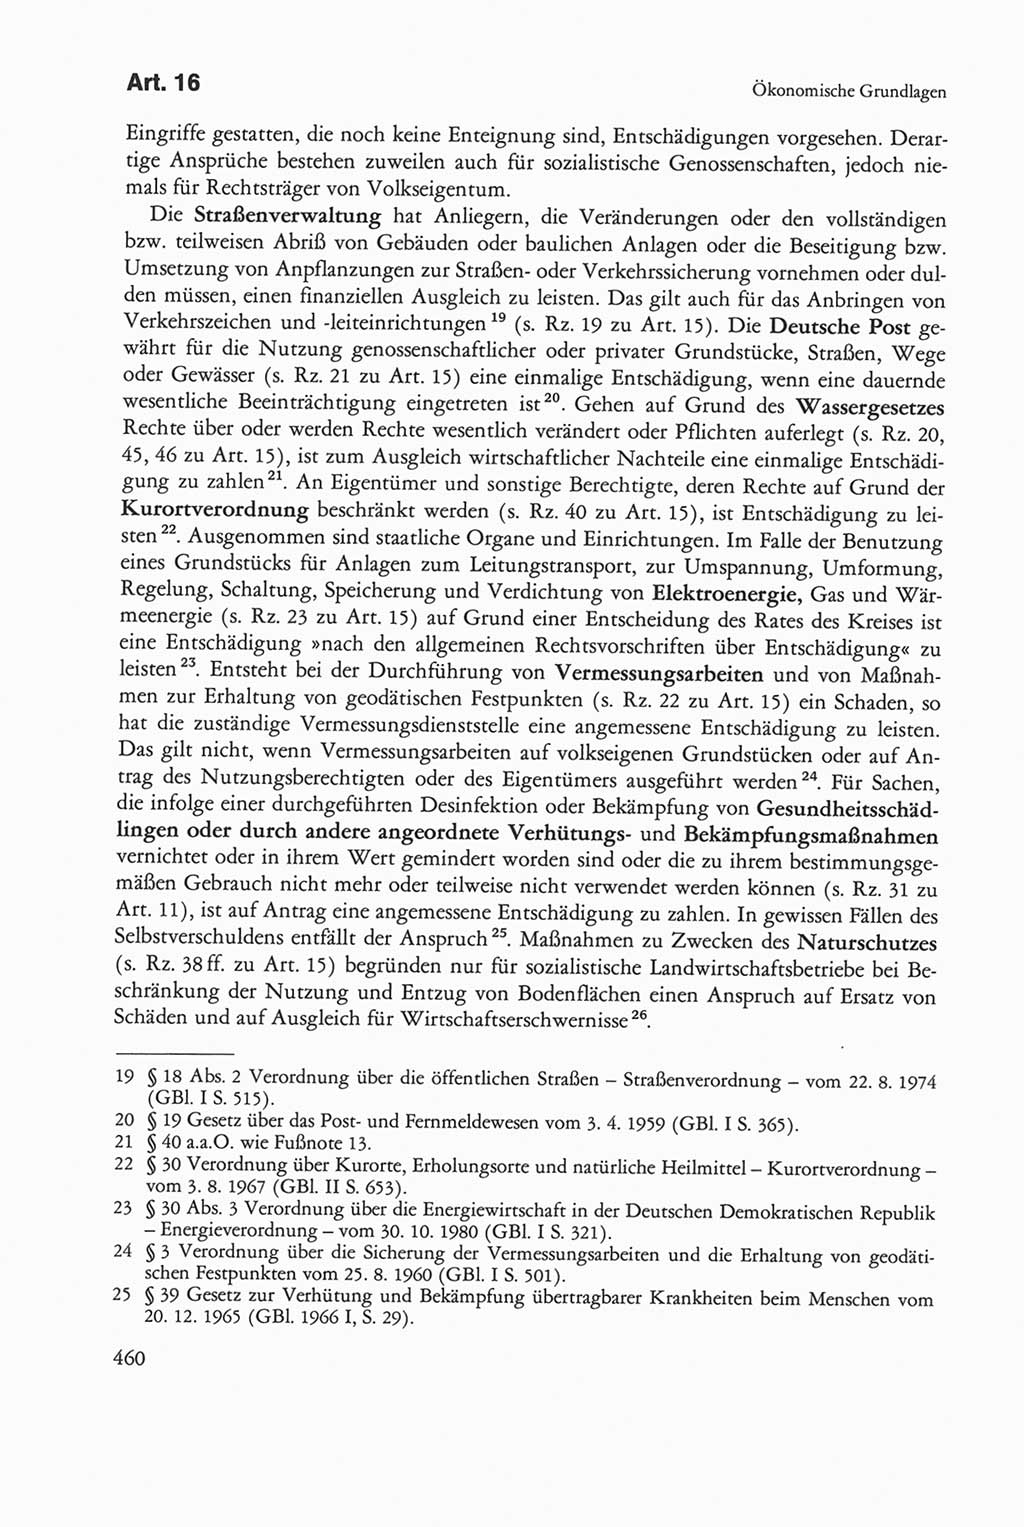 Die sozialistische Verfassung der Deutschen Demokratischen Republik (DDR), Kommentar mit einem Nachtrag 1997, Seite 460 (Soz. Verf. DDR Komm. Nachtr. 1997, S. 460)